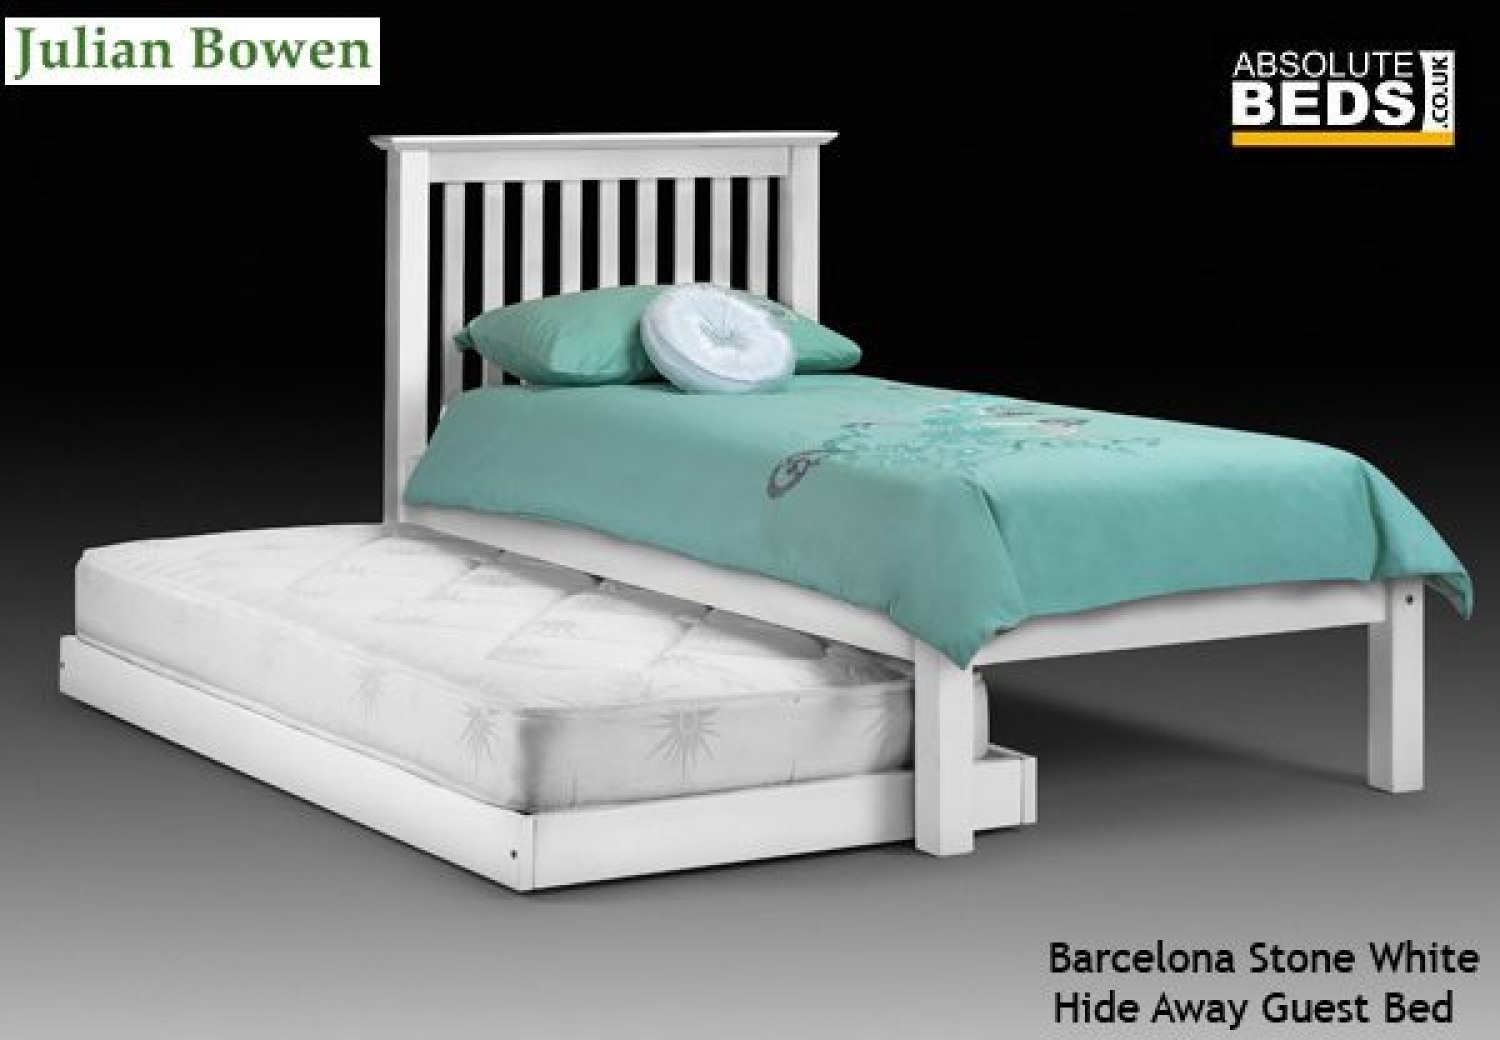 julian bowen barcelona pine hideaway guest bed image